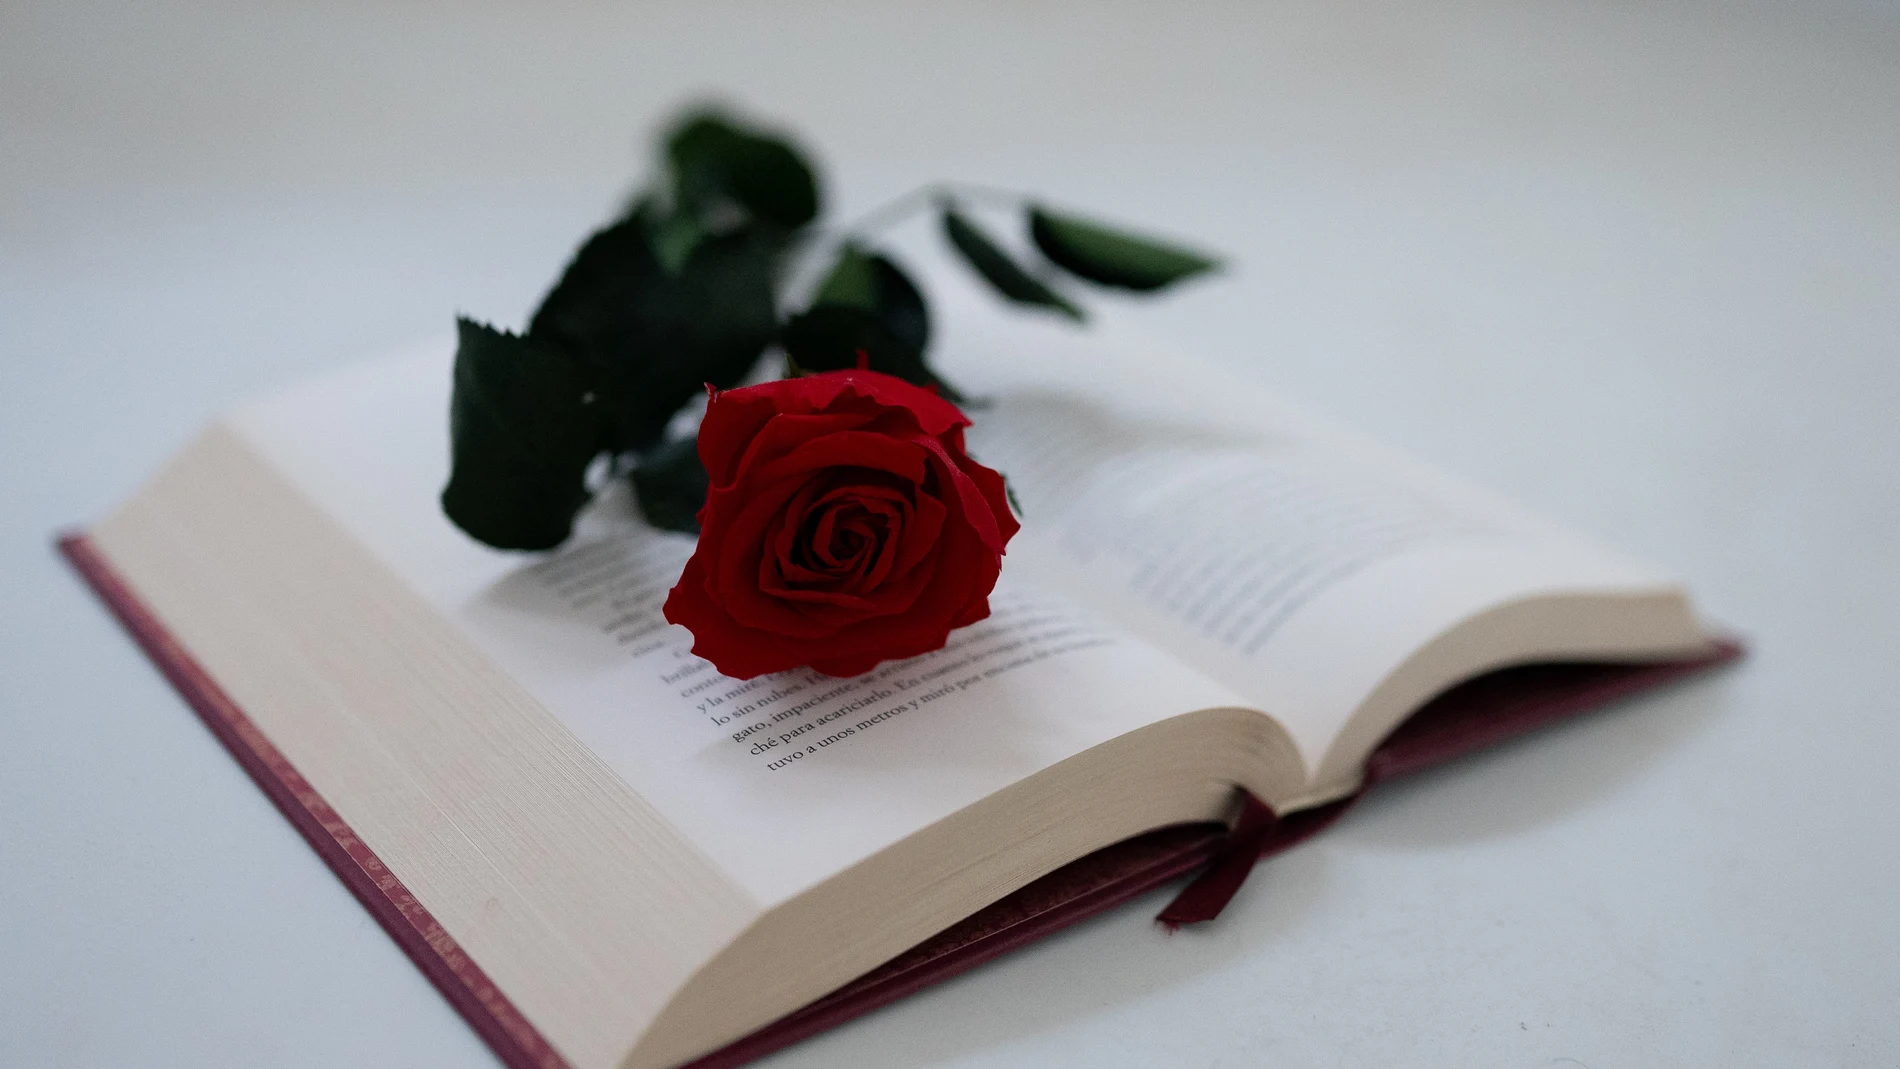 Por qué se regala un libro y una rosa en Cataluña el día de San Jorge